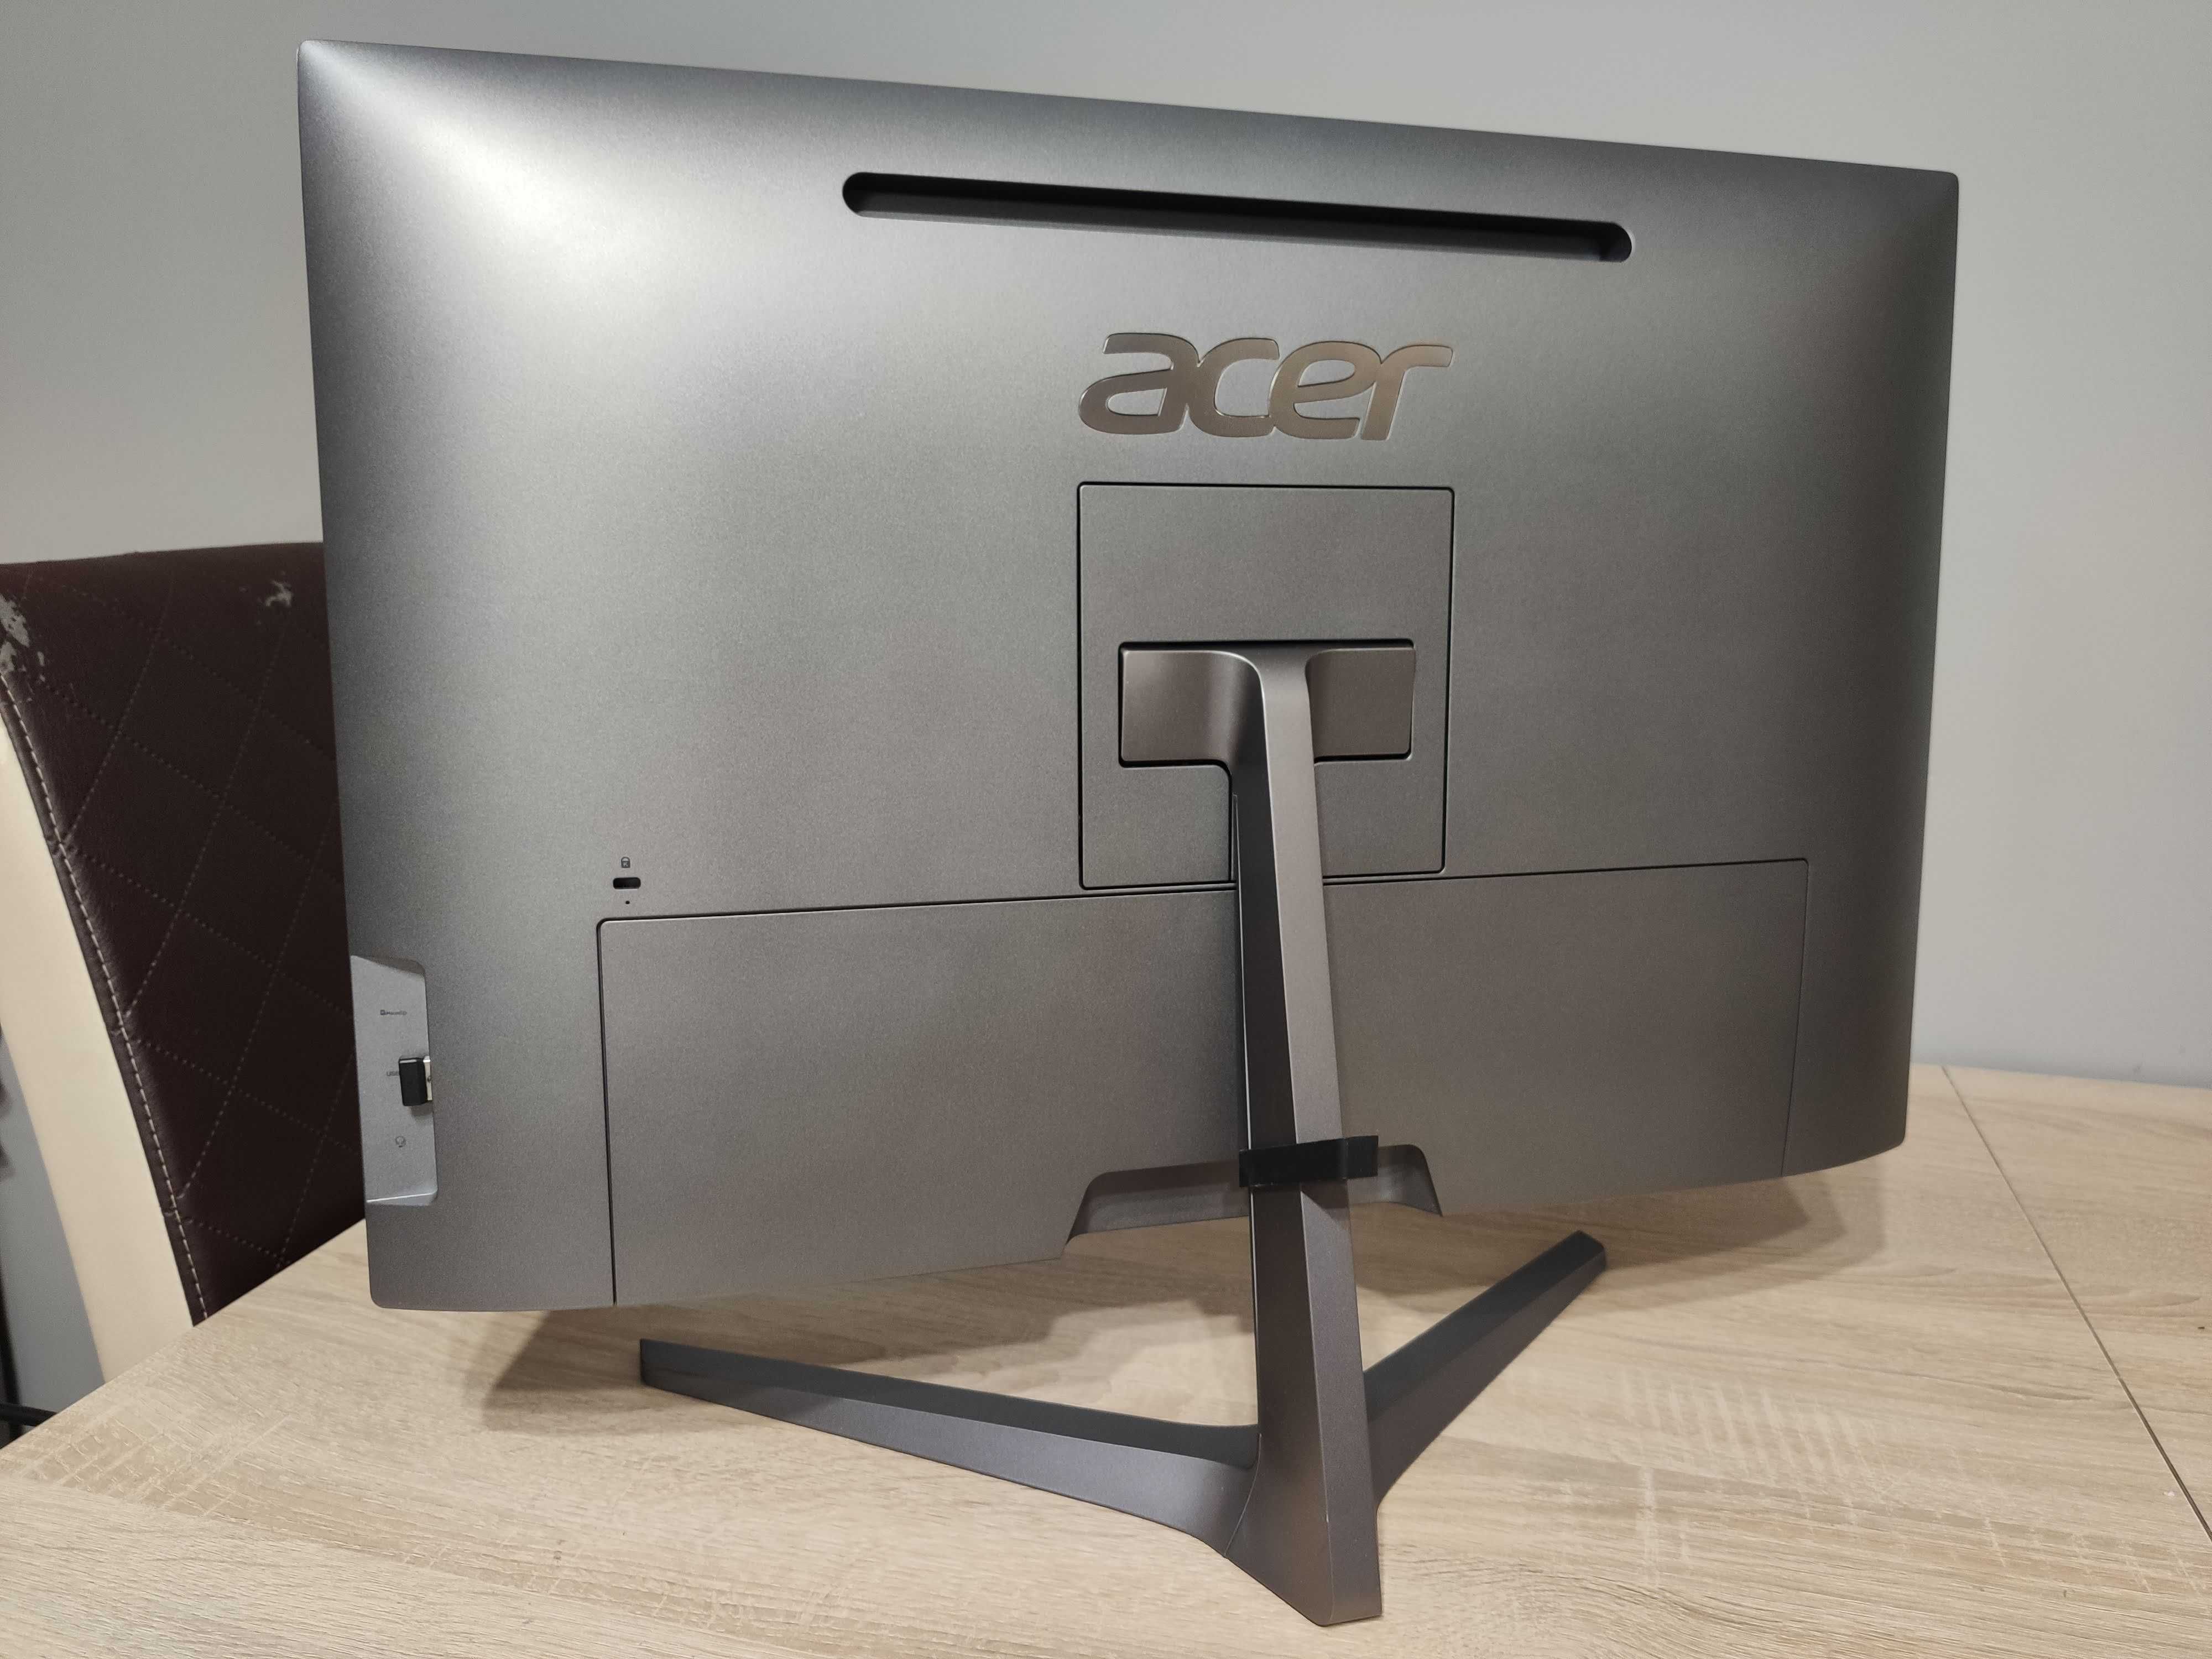 Komputer Acer AIO dotykowy - i5-8250U, 8GB RAM DDR4, SSD M.2 128GB